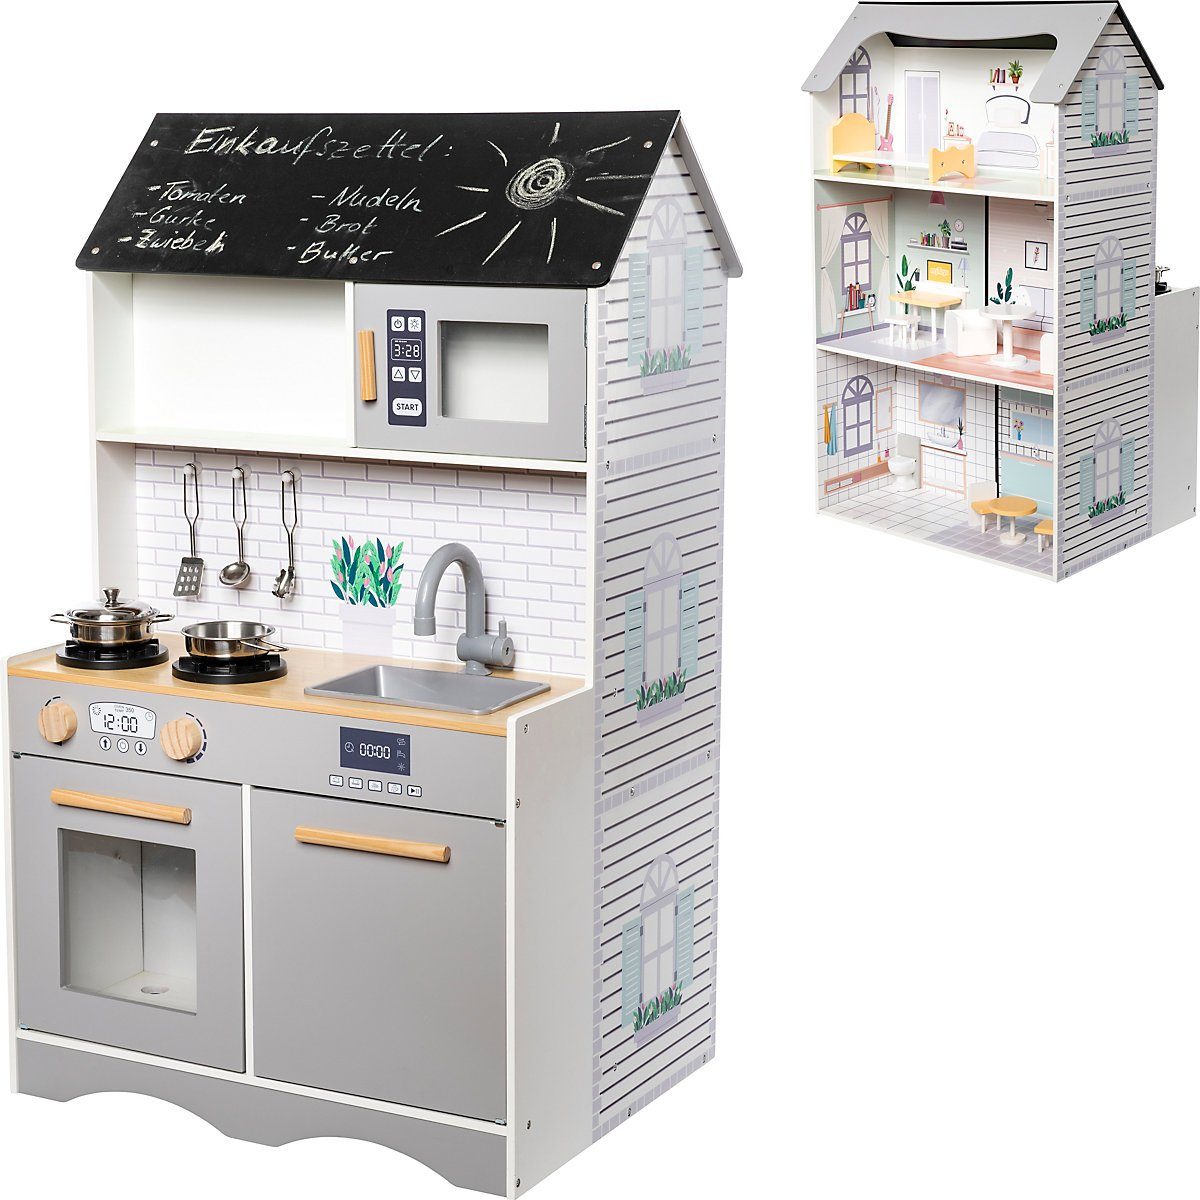 myToys ORIGINALS Puppenhaus 2 in 1 Puppenhaus mit Spielküche